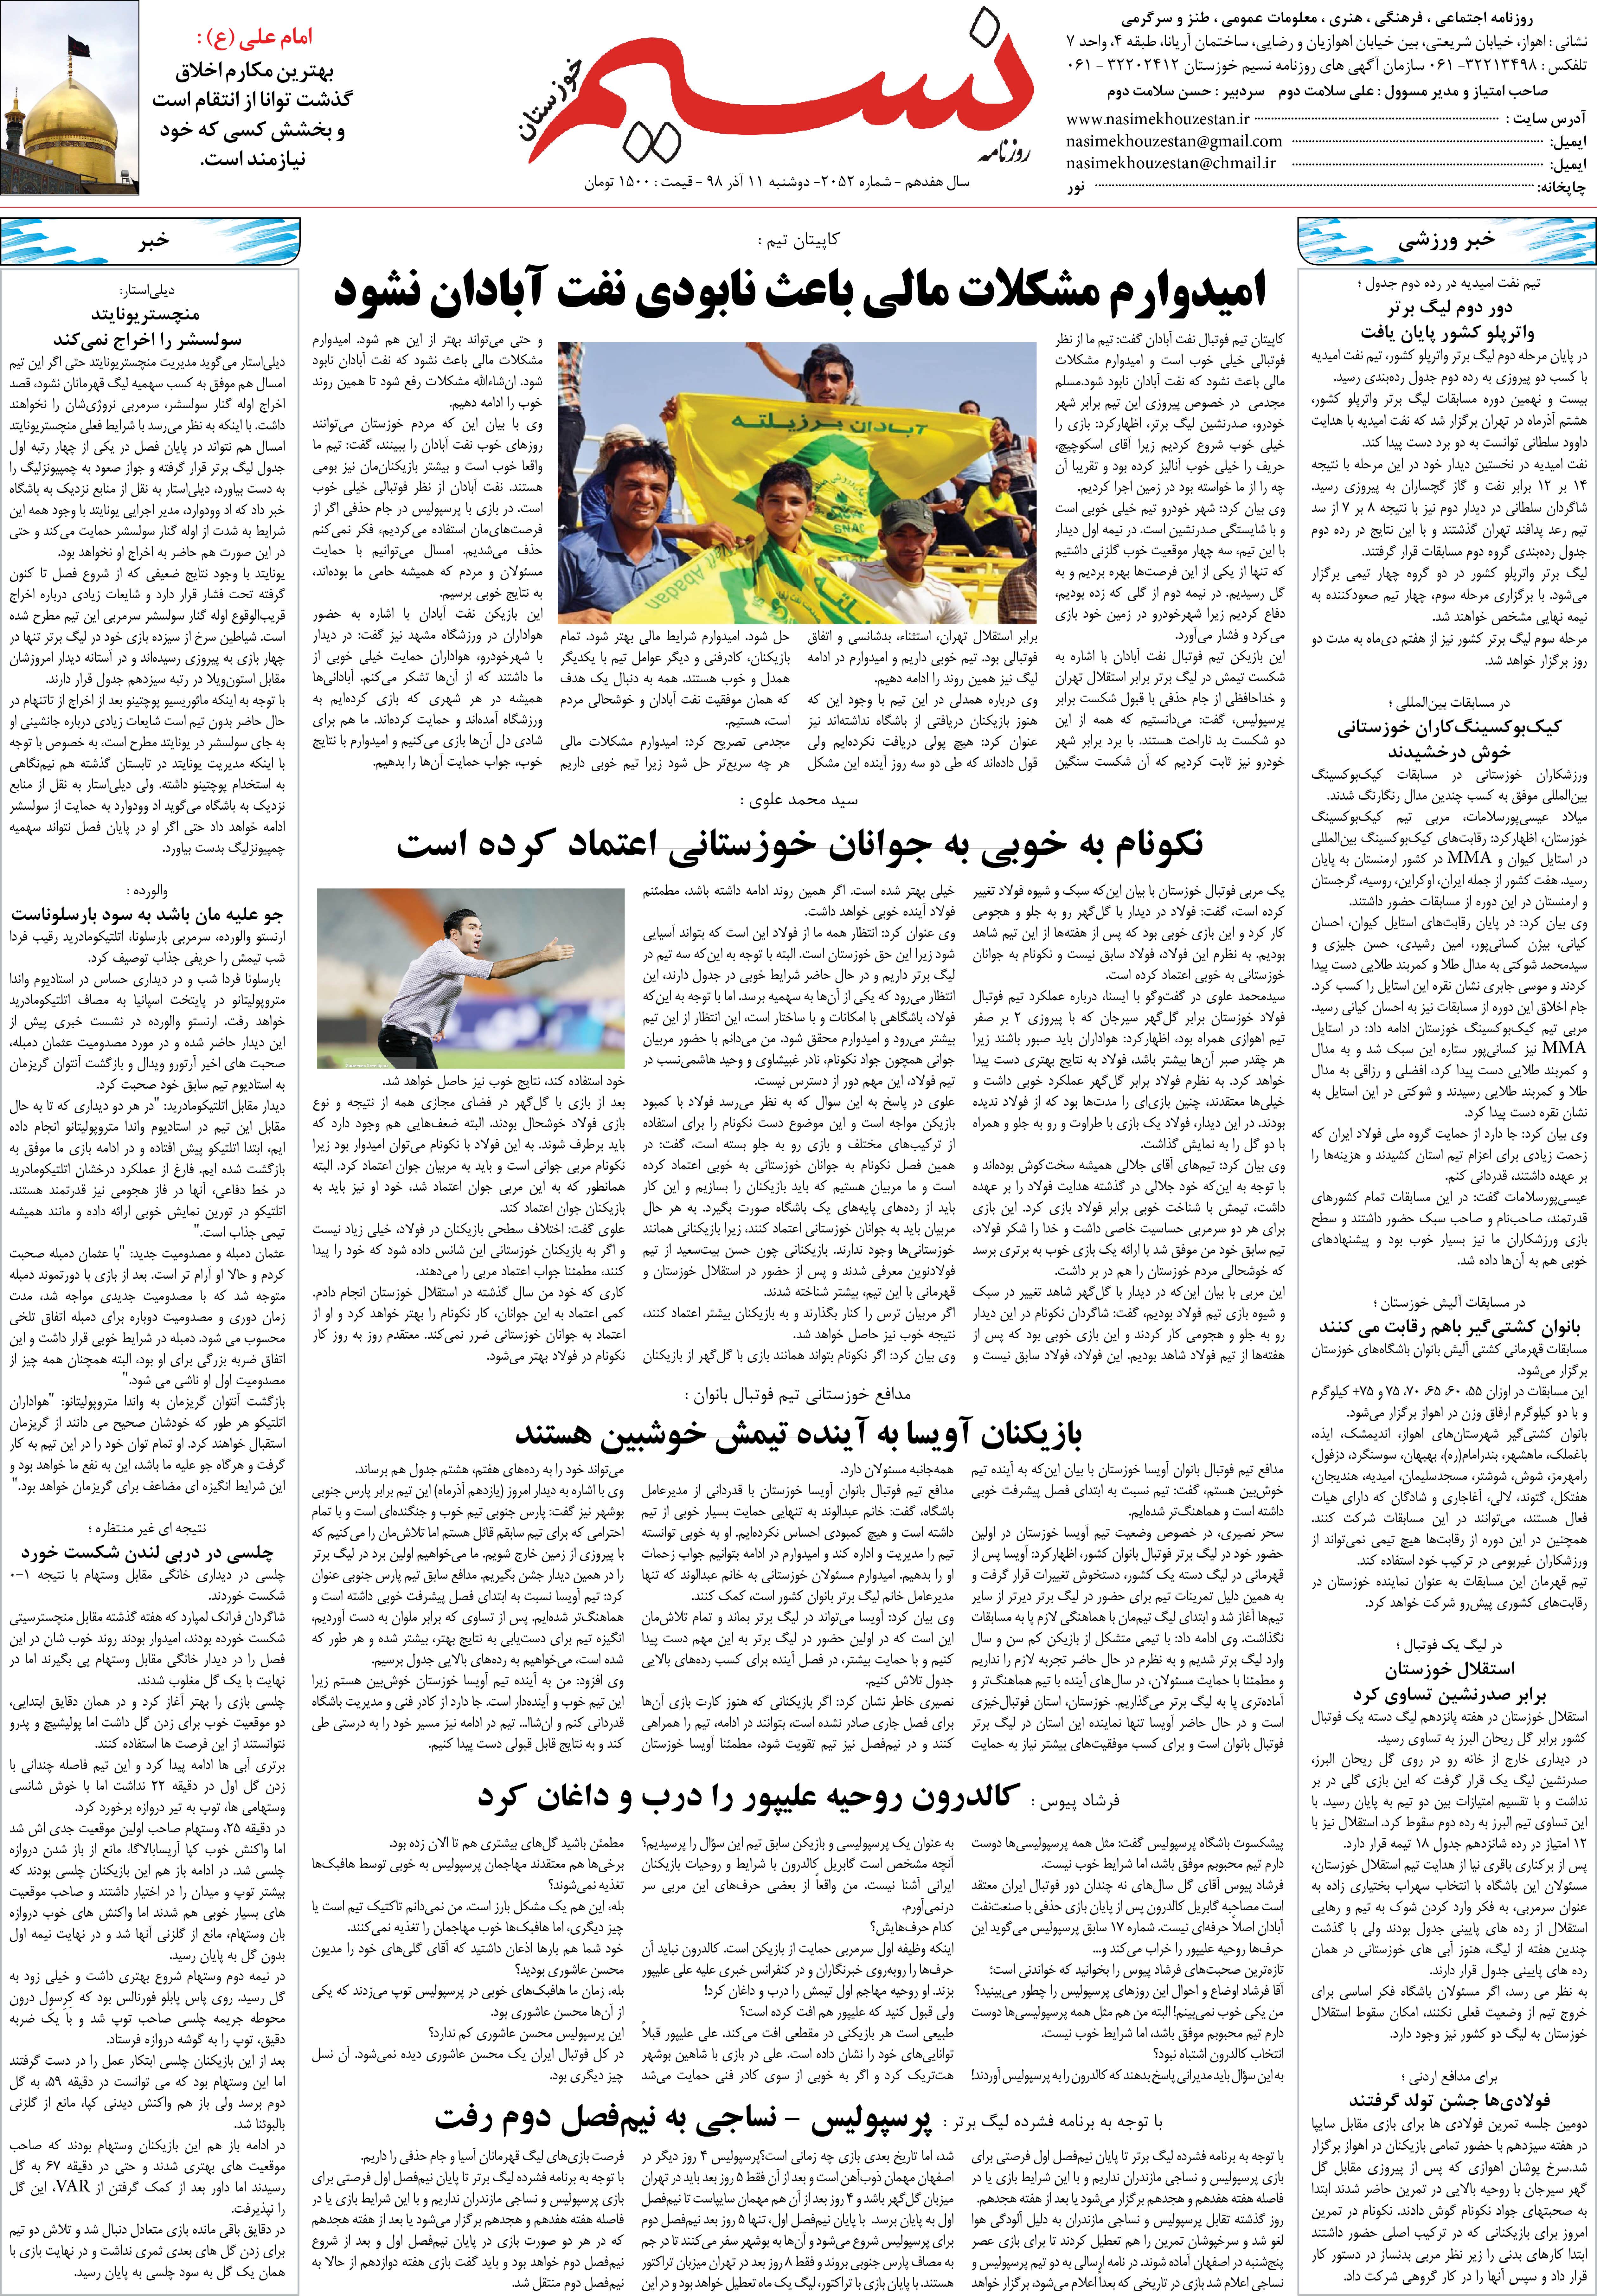 صفحه آخر روزنامه نسیم شماره 2052